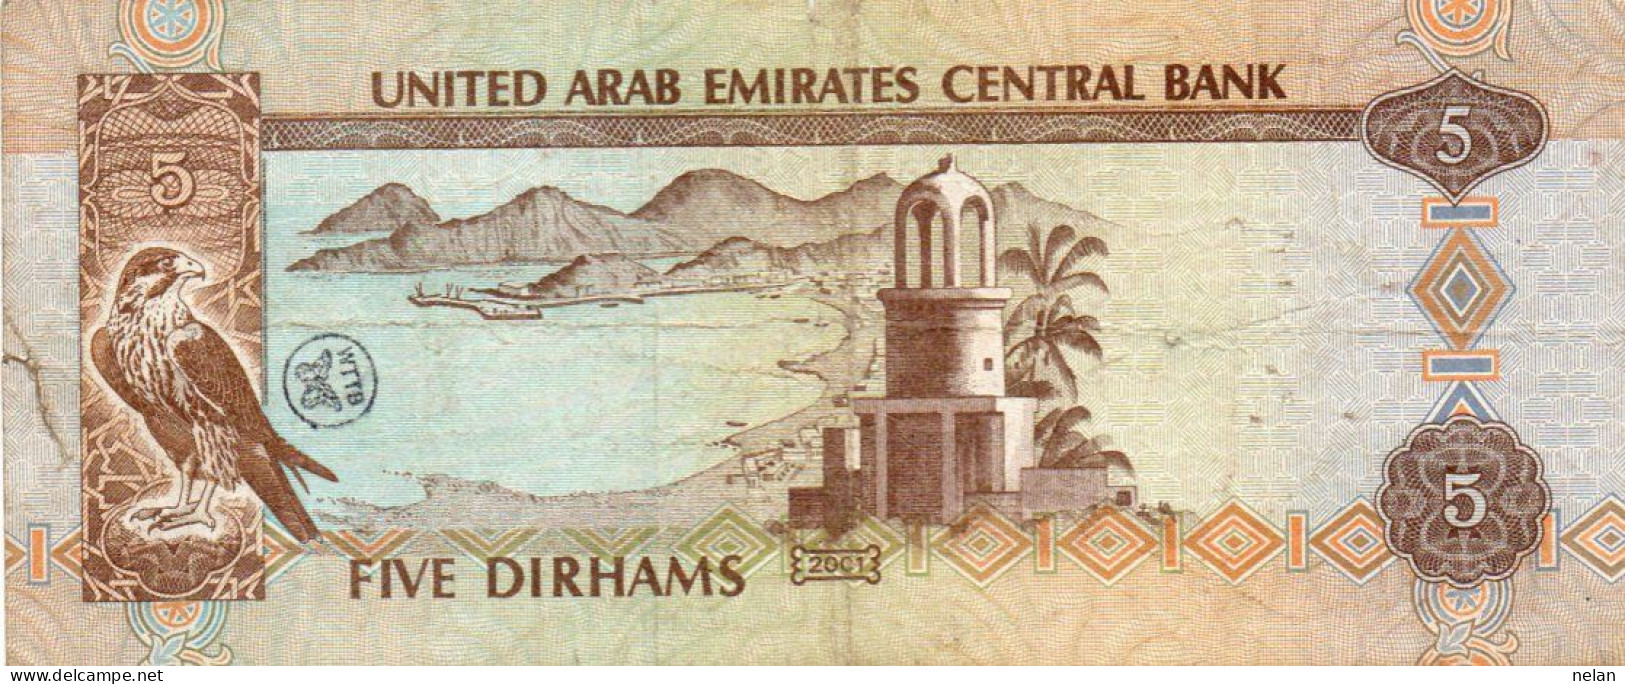 UNITED ARAB EMIRATES 5 DIRHAMS  1995  P-12d - Ver. Arab. Emirate